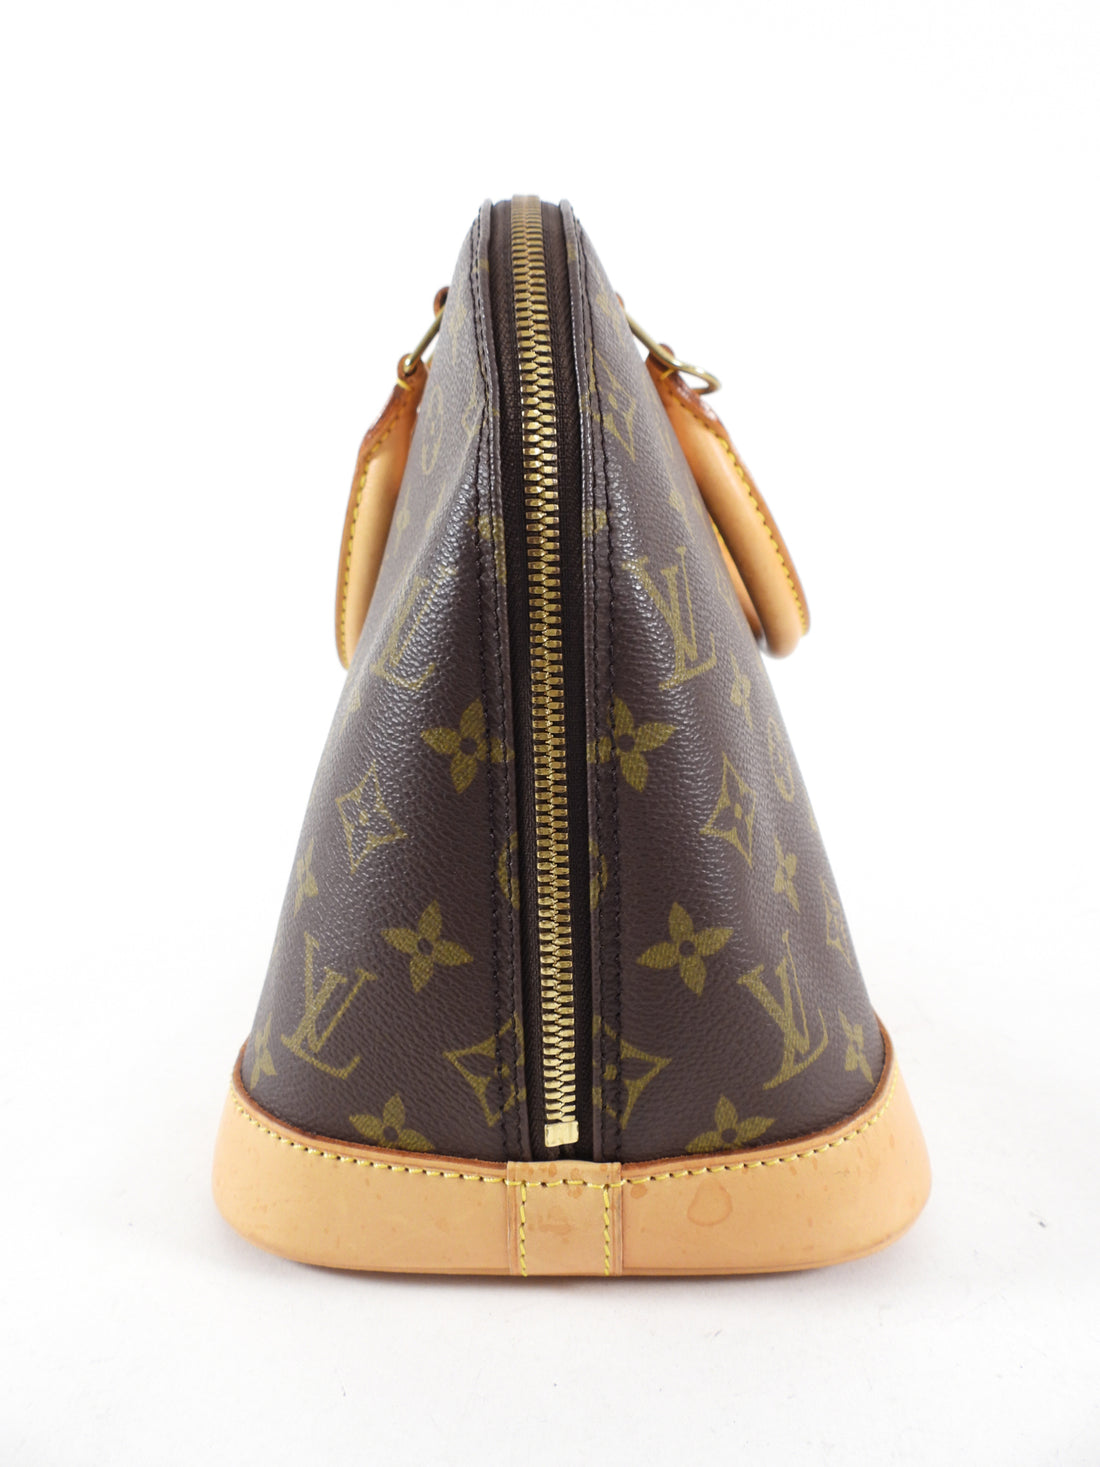 Louis Vuitton Vintage Alma PM Bandoulière Patent Leather Dome Bag